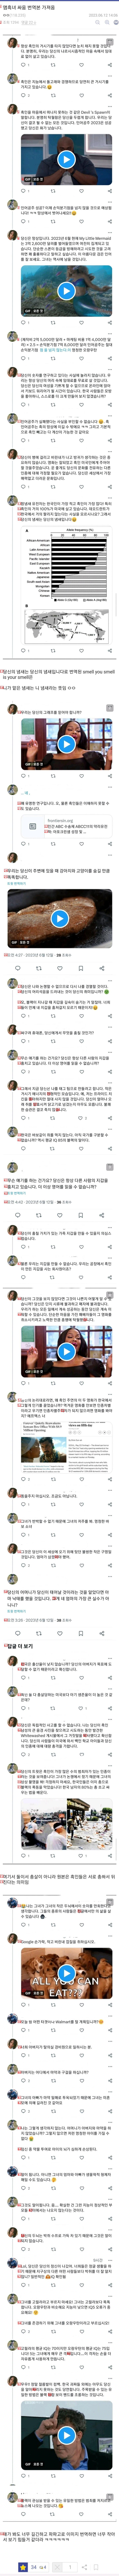 黒人vs韓国人ツイッターで口げんか